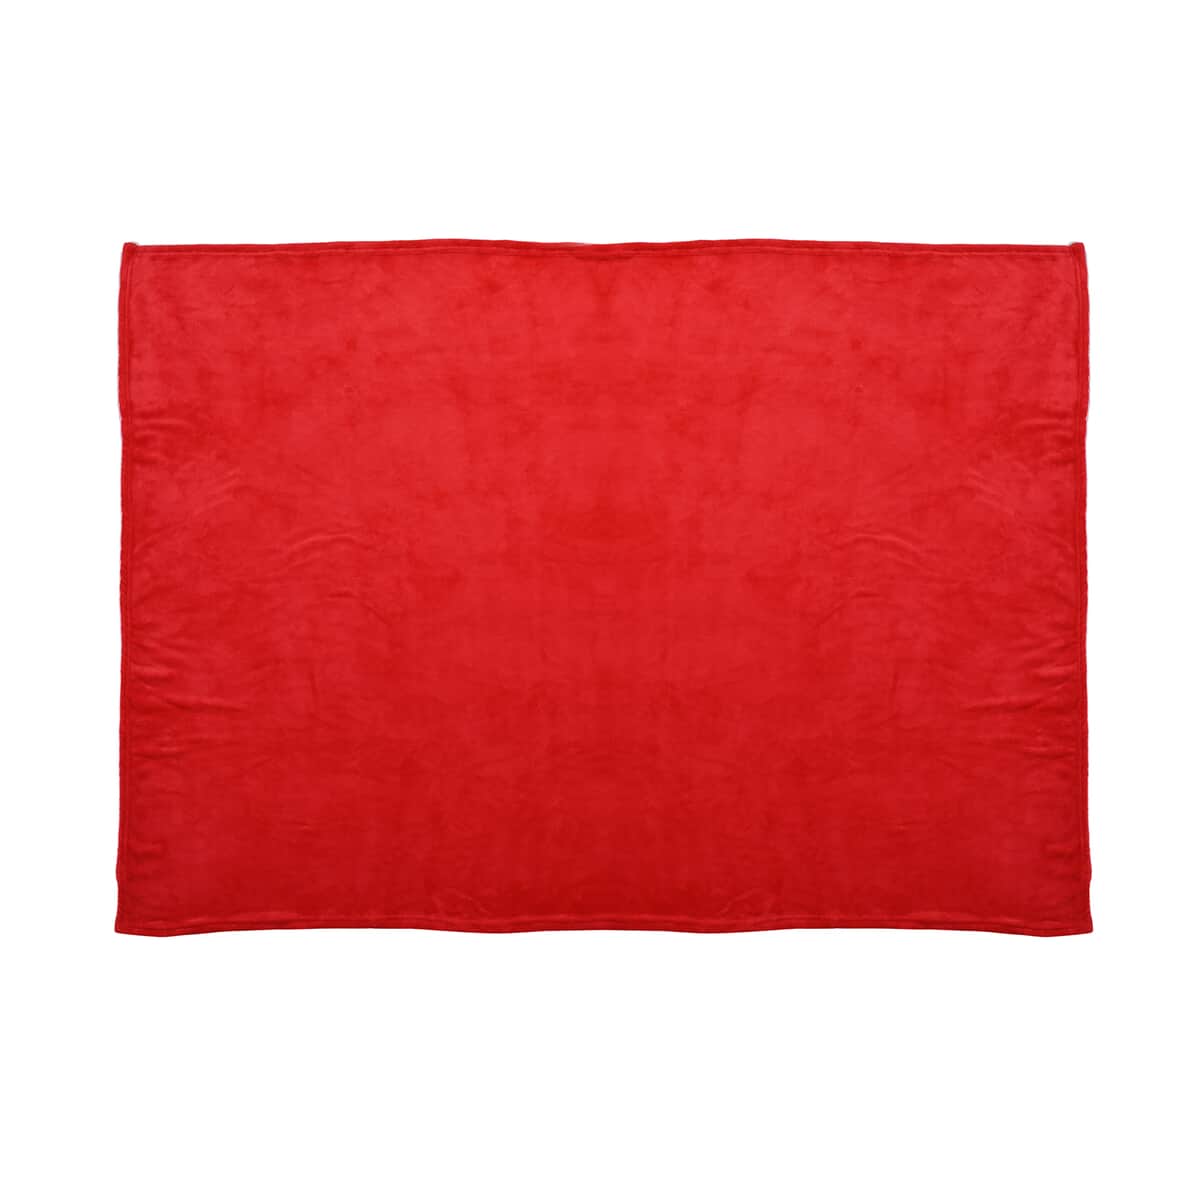 Homesmart Set of 2 Black/Flower Print Pattern & Red Solid Microfiber Flannel Blanket image number 1